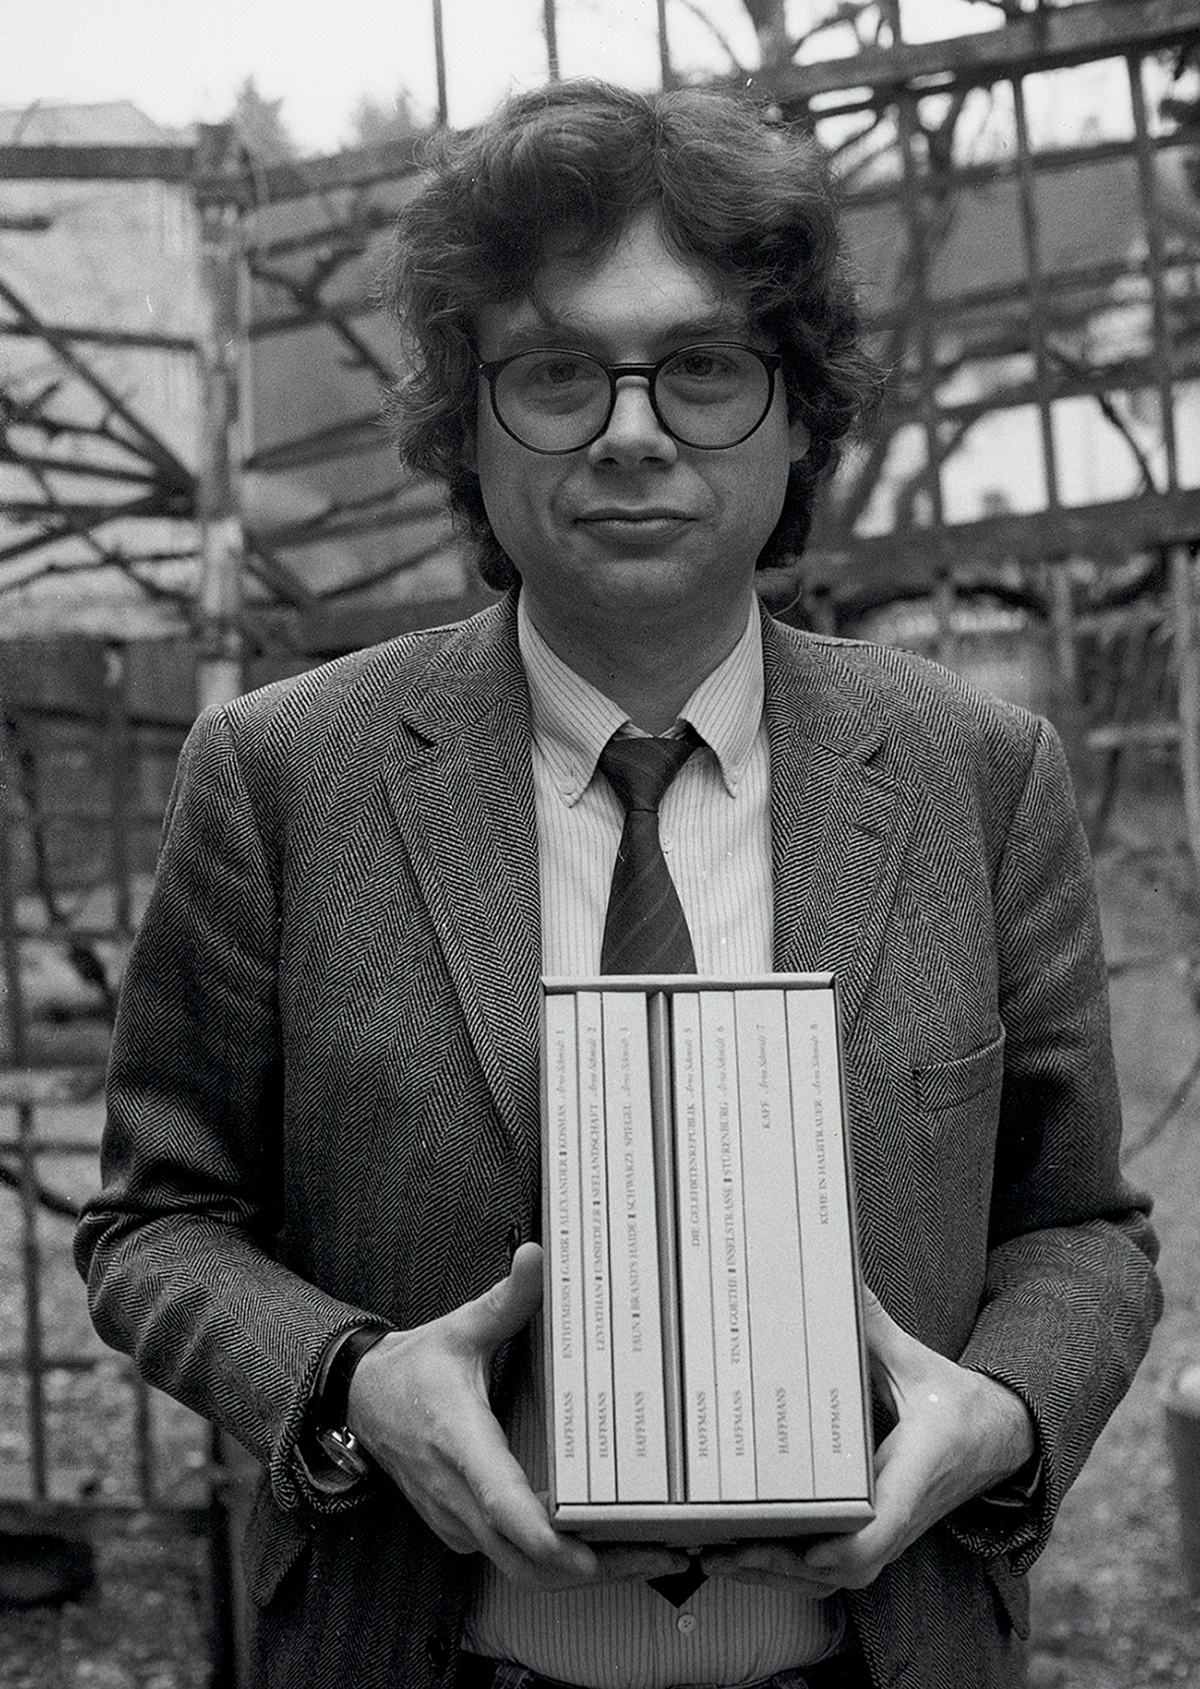 Der Verleger Gerd Haffmans mit einem Schuber voller Bücher, das Datum der Aufnahme ist unbekannt. (Bild: Fritz Senn / ZB Zürich)